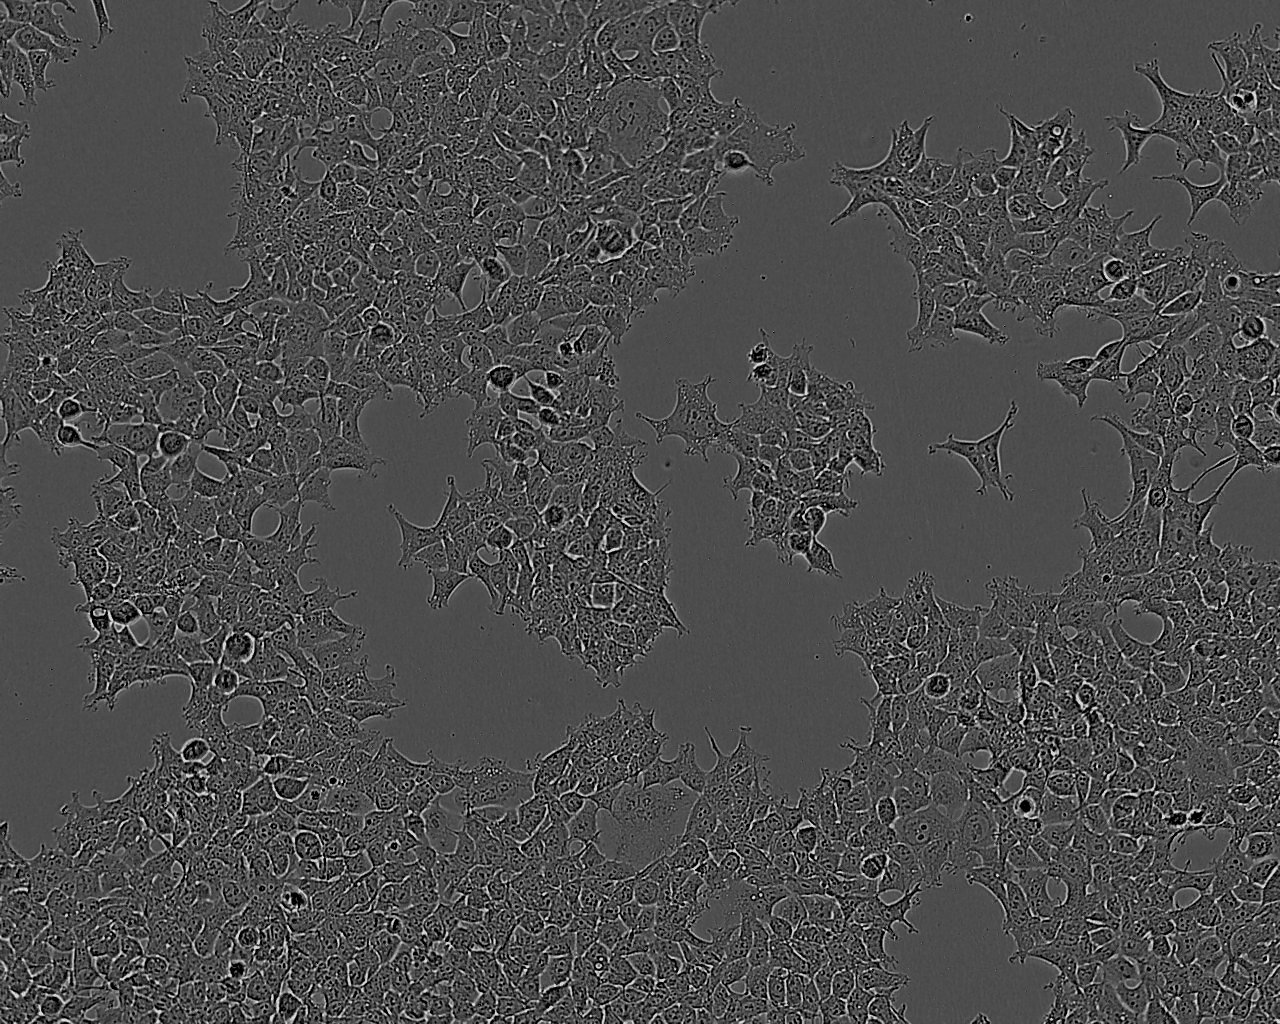 BNL 1ME A.7R.1:小鼠肝上皮复苏细胞(提供STR鉴定图谱),BNL 1ME A.7R.1